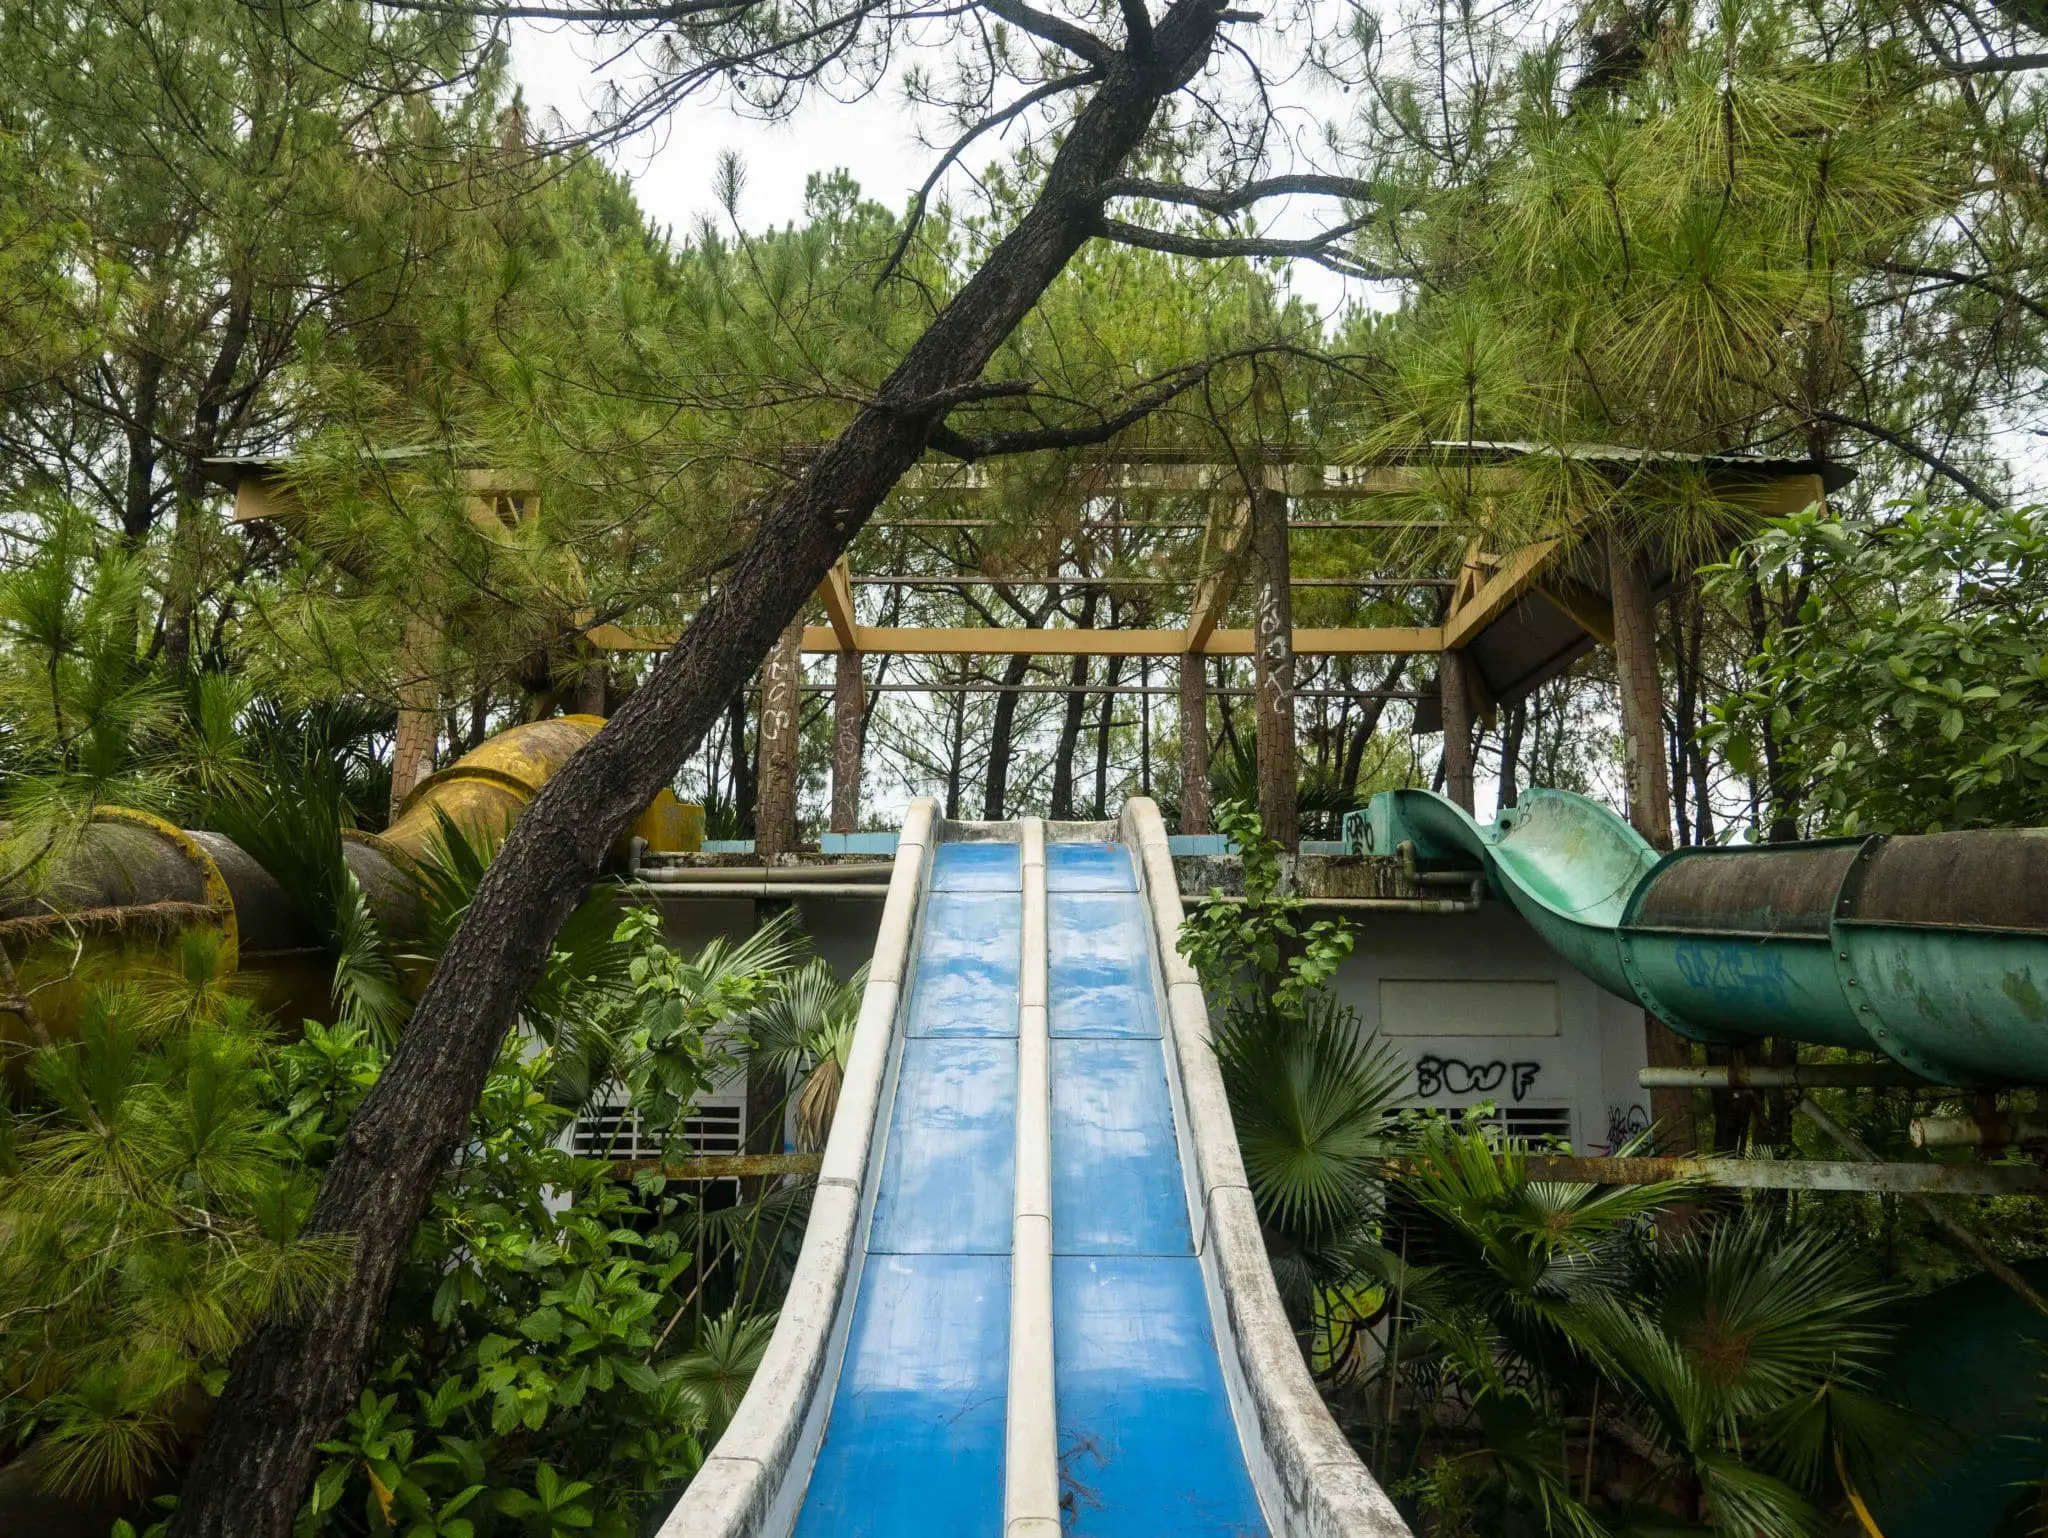 Abandoned Water Park slides